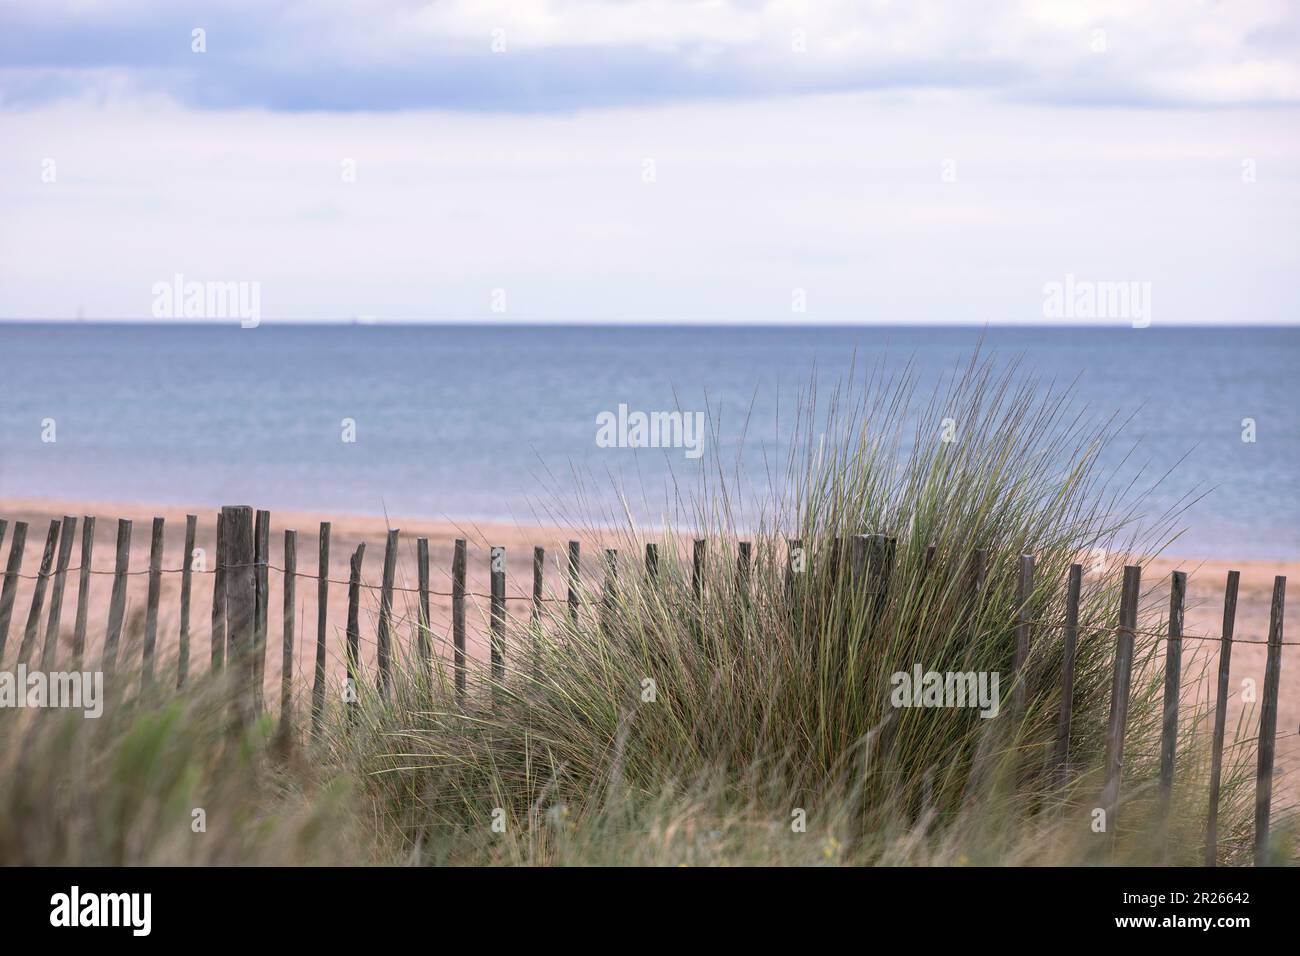 Neutrale Farben, minimalistische Meereslandschaft. Stimmungsvolle Stimmung am Strand, Küstenpflanzen, Holzzaun. Schönheit der Natur auf dem Meer Urlaub von Romantik Stockfoto